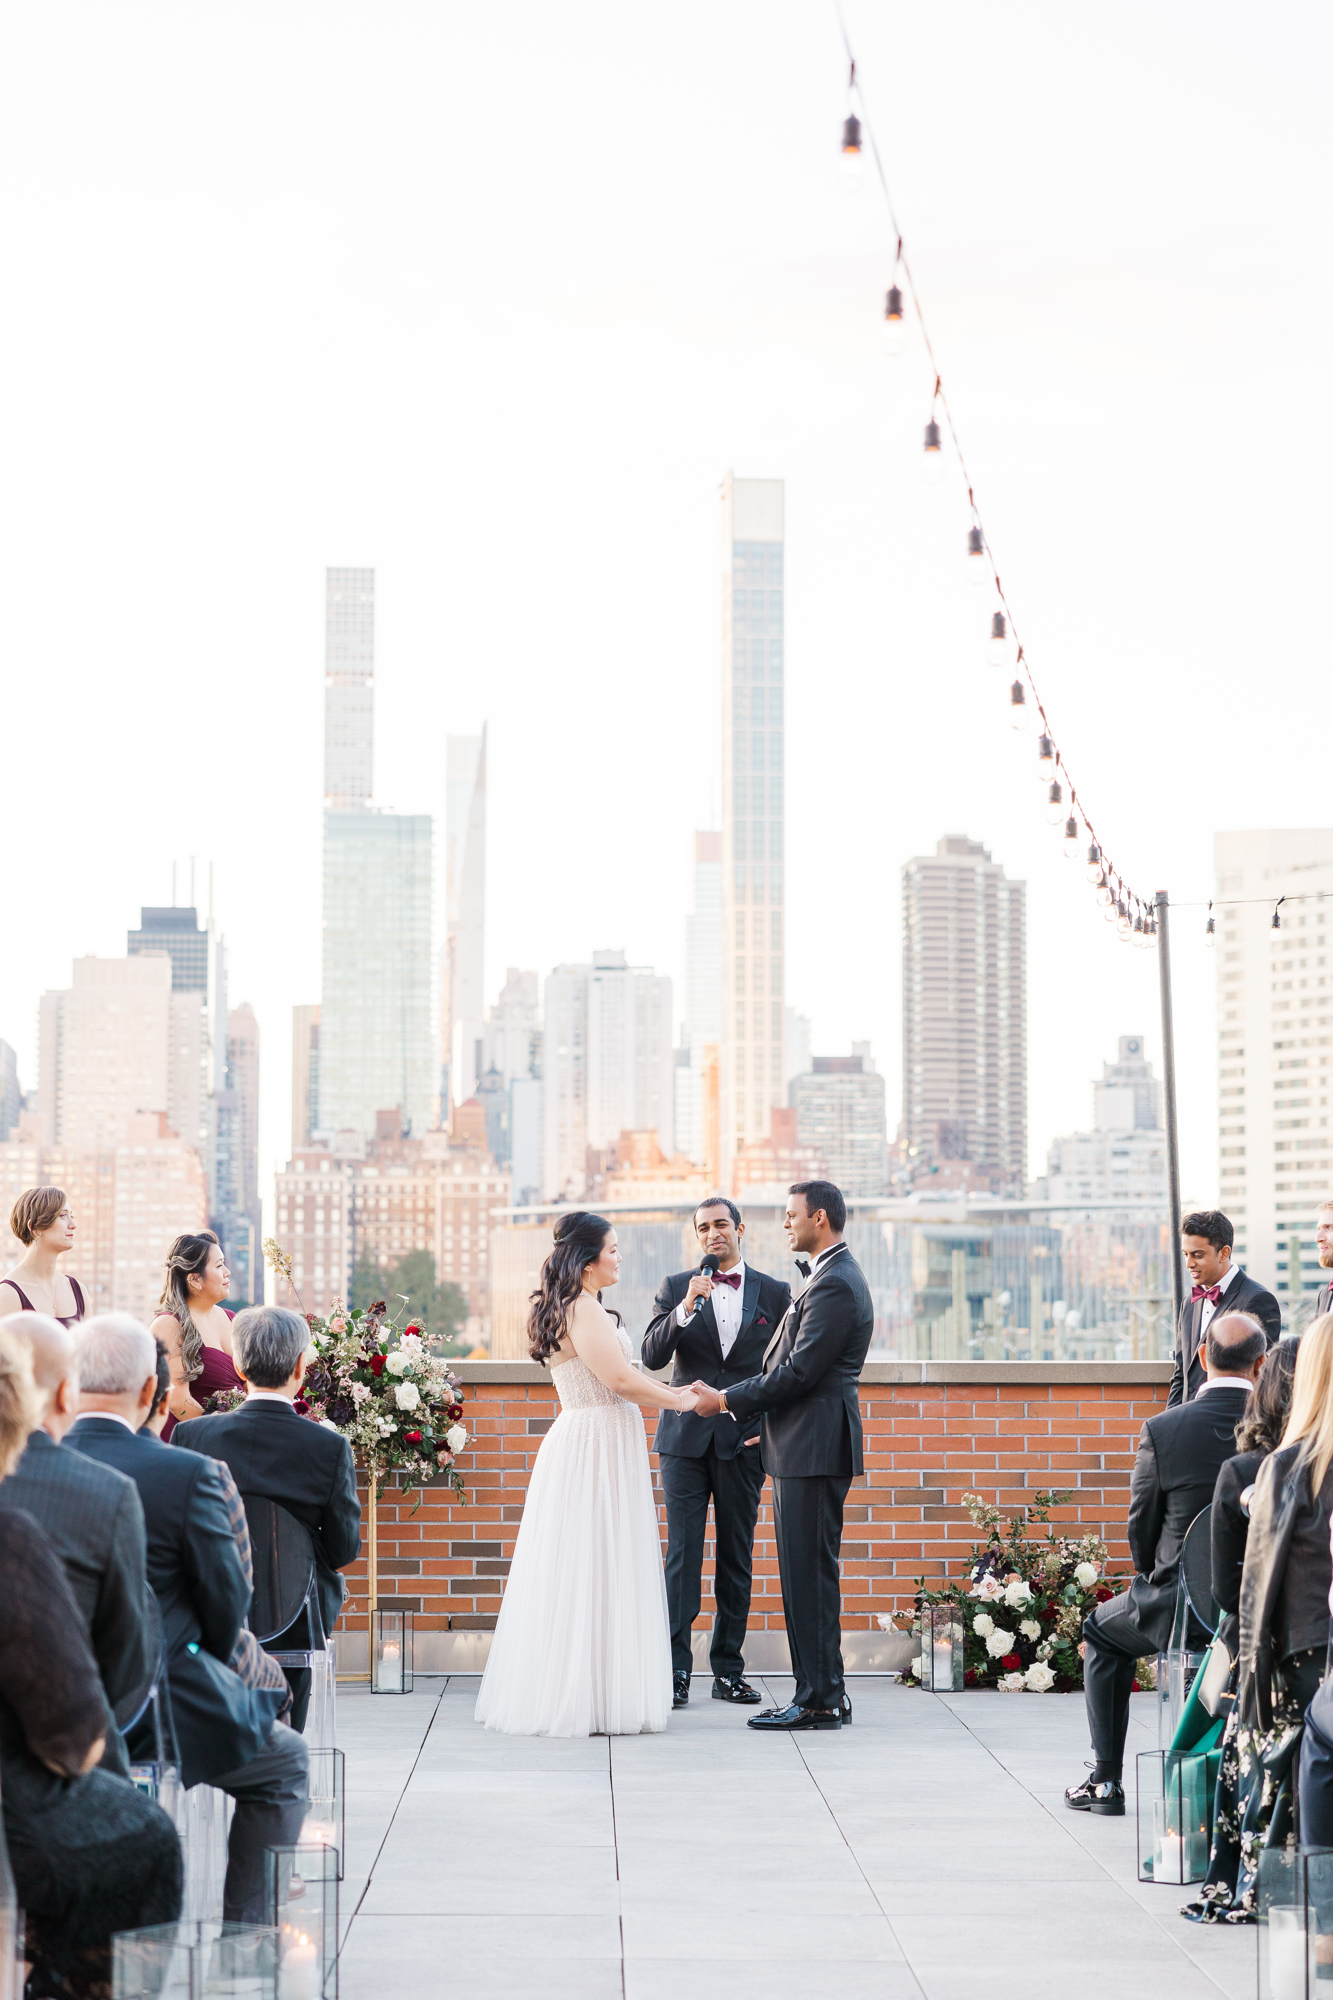 Breathtaking Outdoor New York Wedding Venues